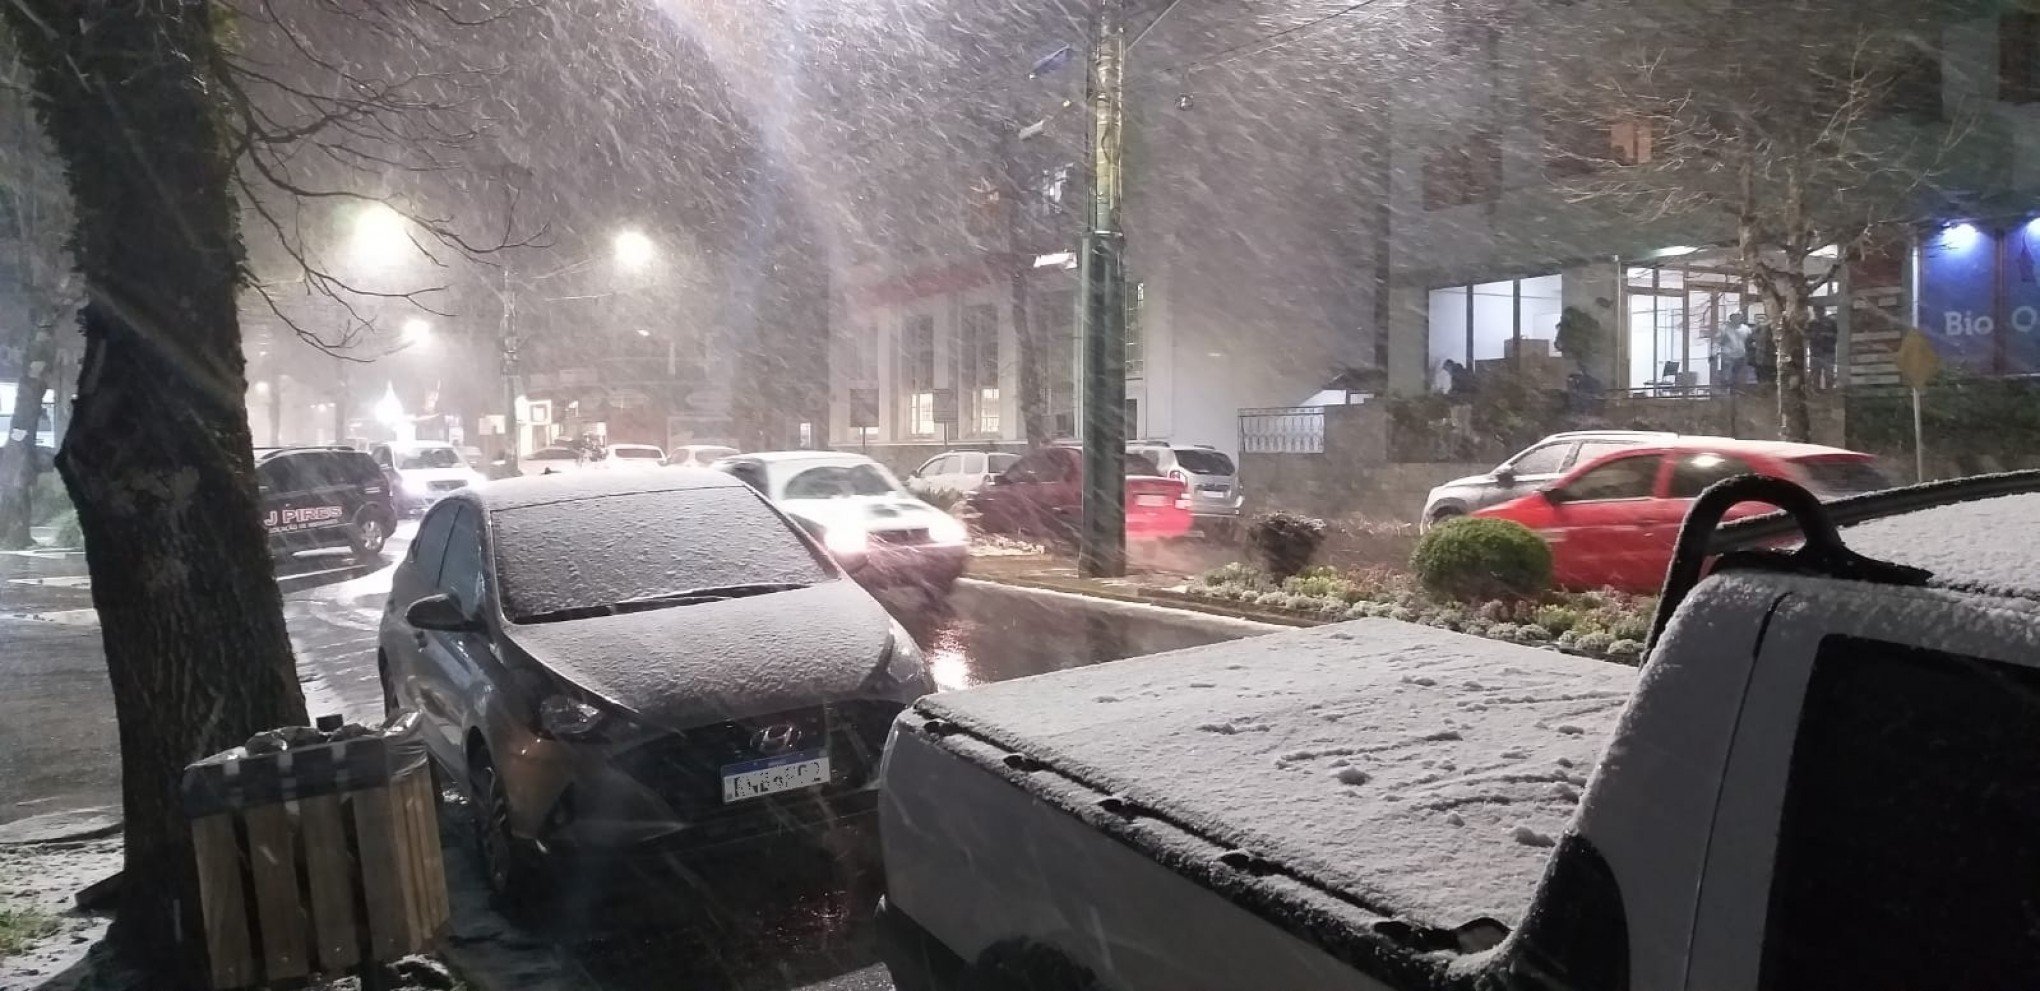 Neve é registrada em cidades gaúchas nesta quarta-feira - Rio Grande do Sul  - Jornal NH